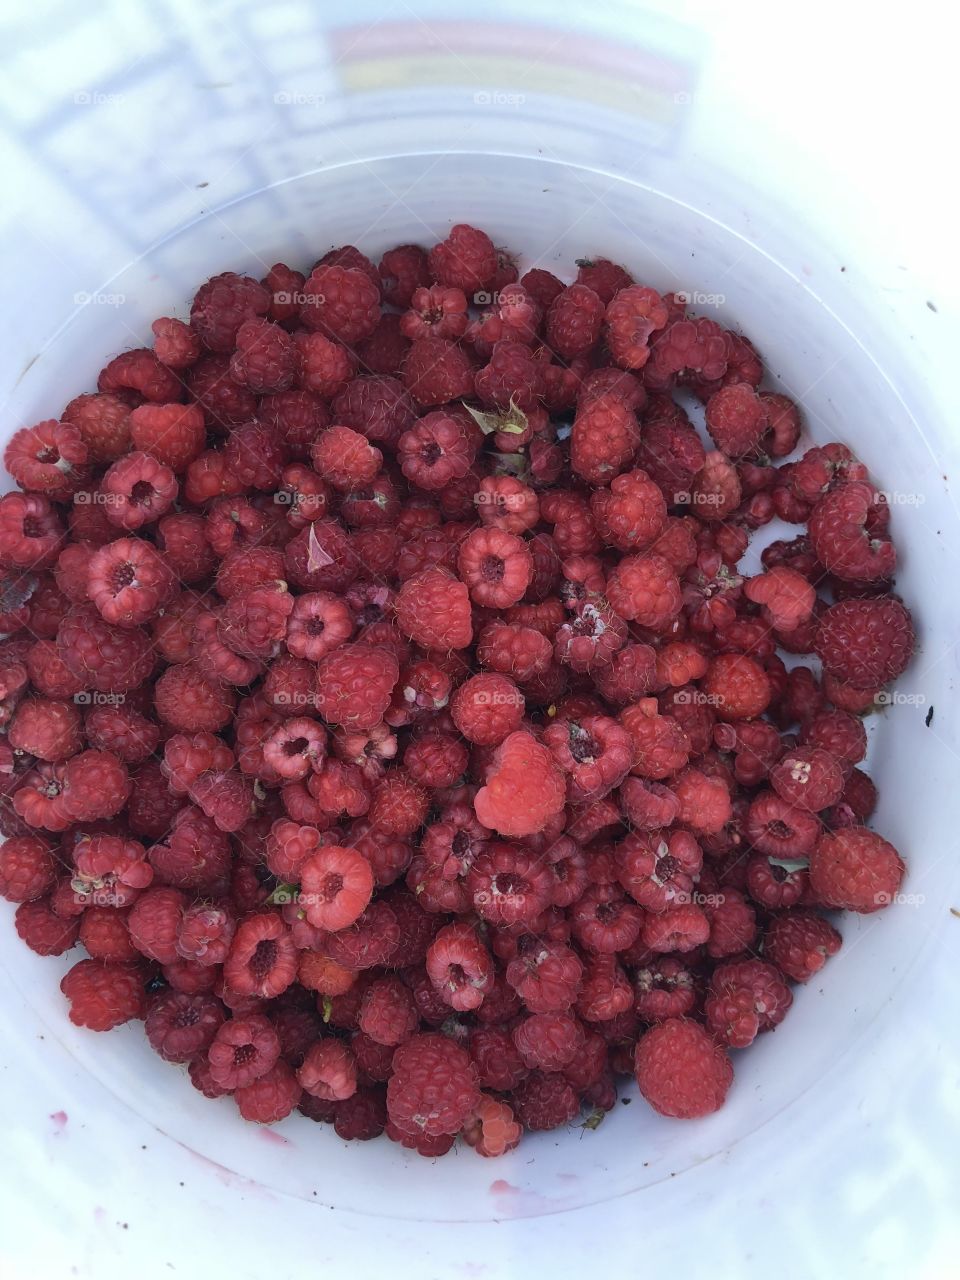 Bucket of fresh picked raspberries